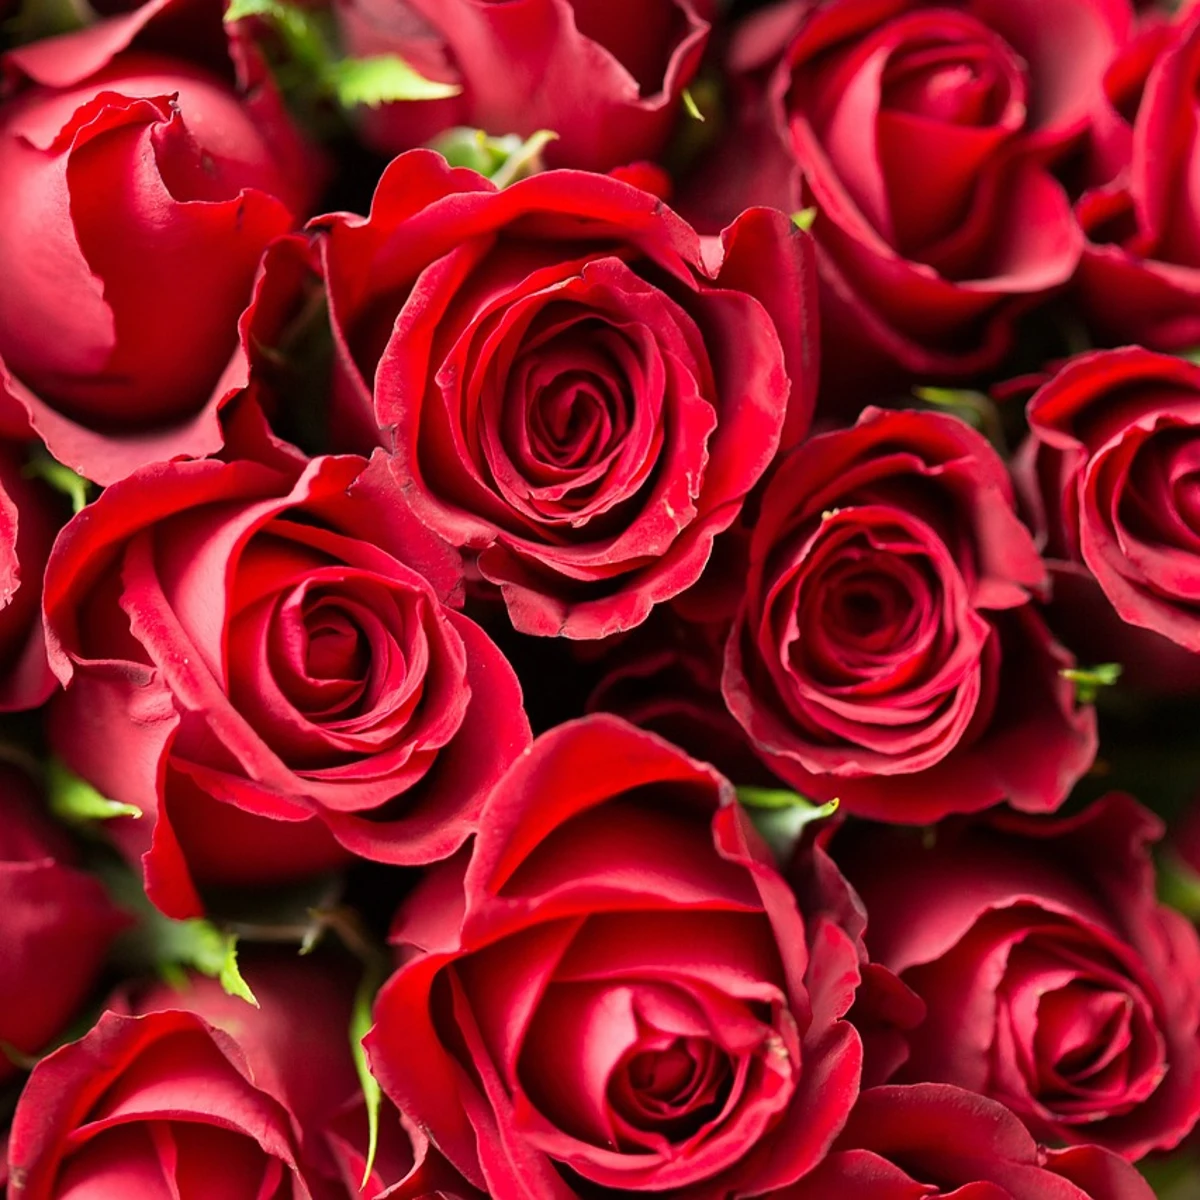 Cómo cuidar tu ramo de rosas de San y conservarlo mayor tiempo posible